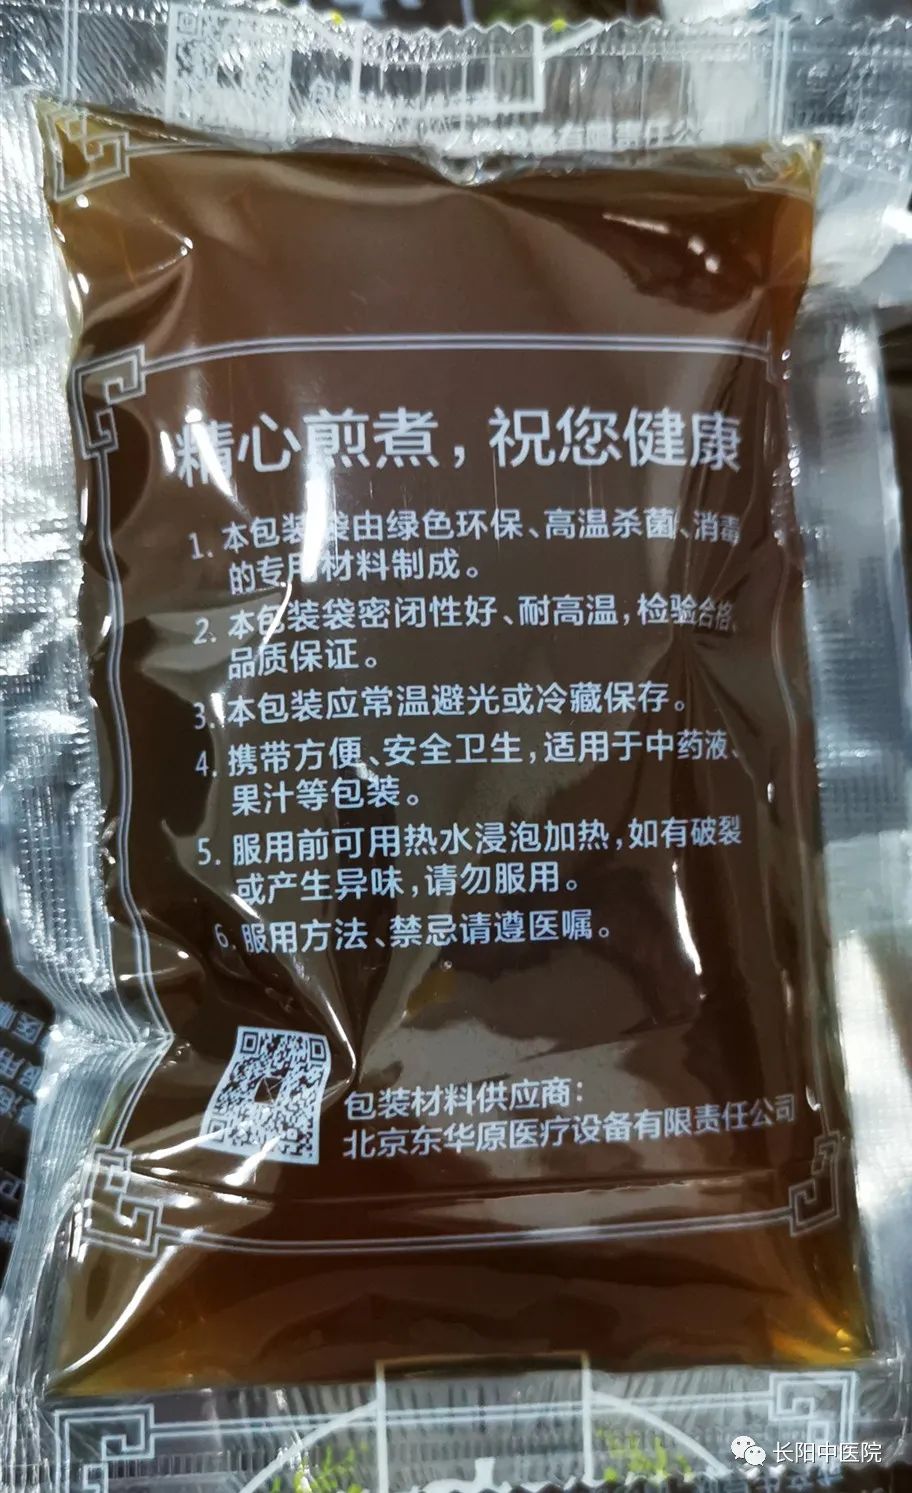 长阳中医院良心出品:邀您见证了中药汤剂的神奇_包装机